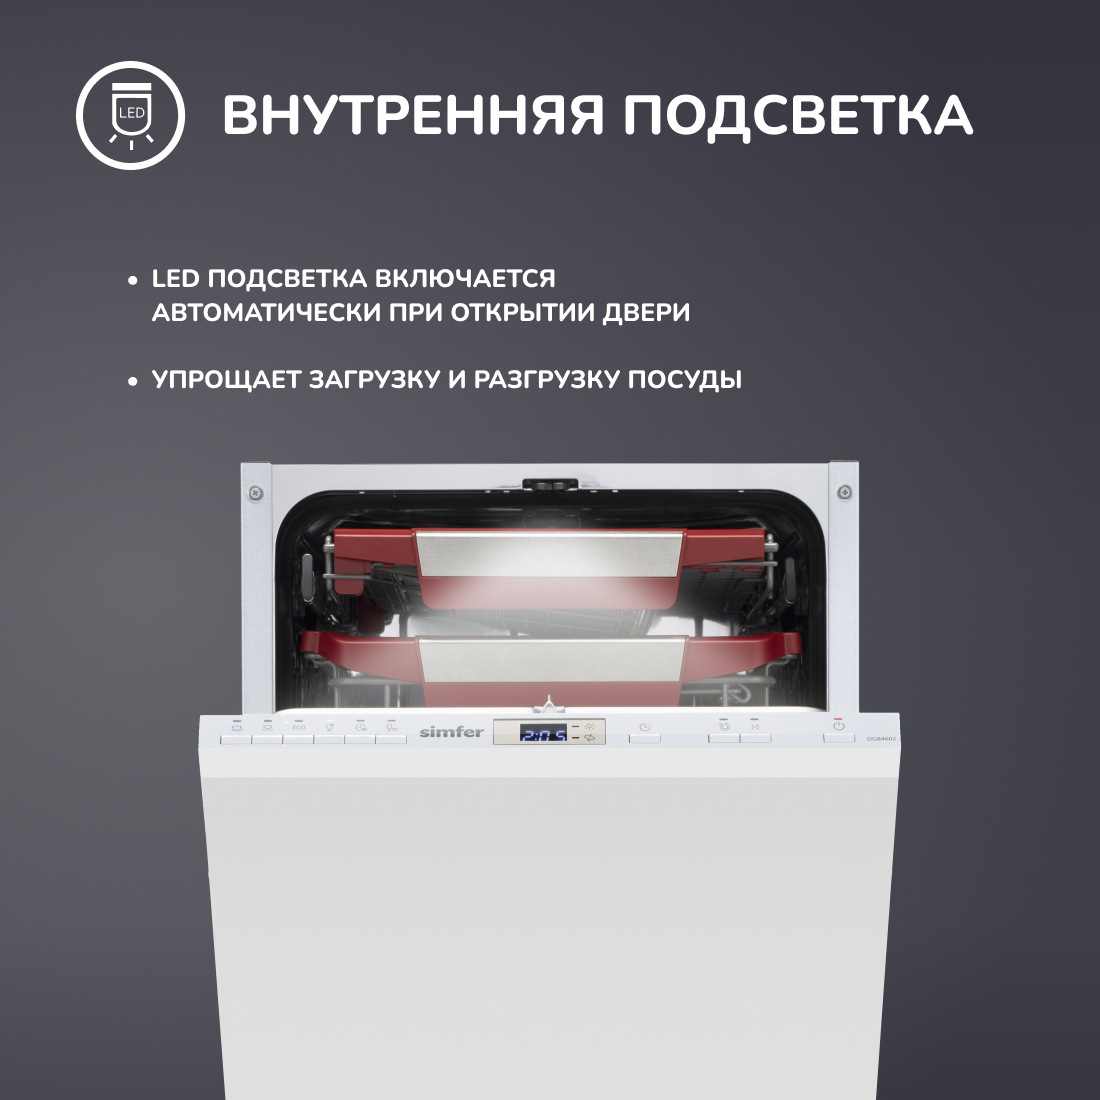 Встраиваемая посудомоечная машина Simfer DGB4602 (вместимость 10 комплектов, внутренняя подсветка, энергоэффективность А++), цвет серый Встраиваемая посудомоечная машина Simfer DGB4602 (вместимость 10 комплектов, внутренняя подсветка, э - фото 7